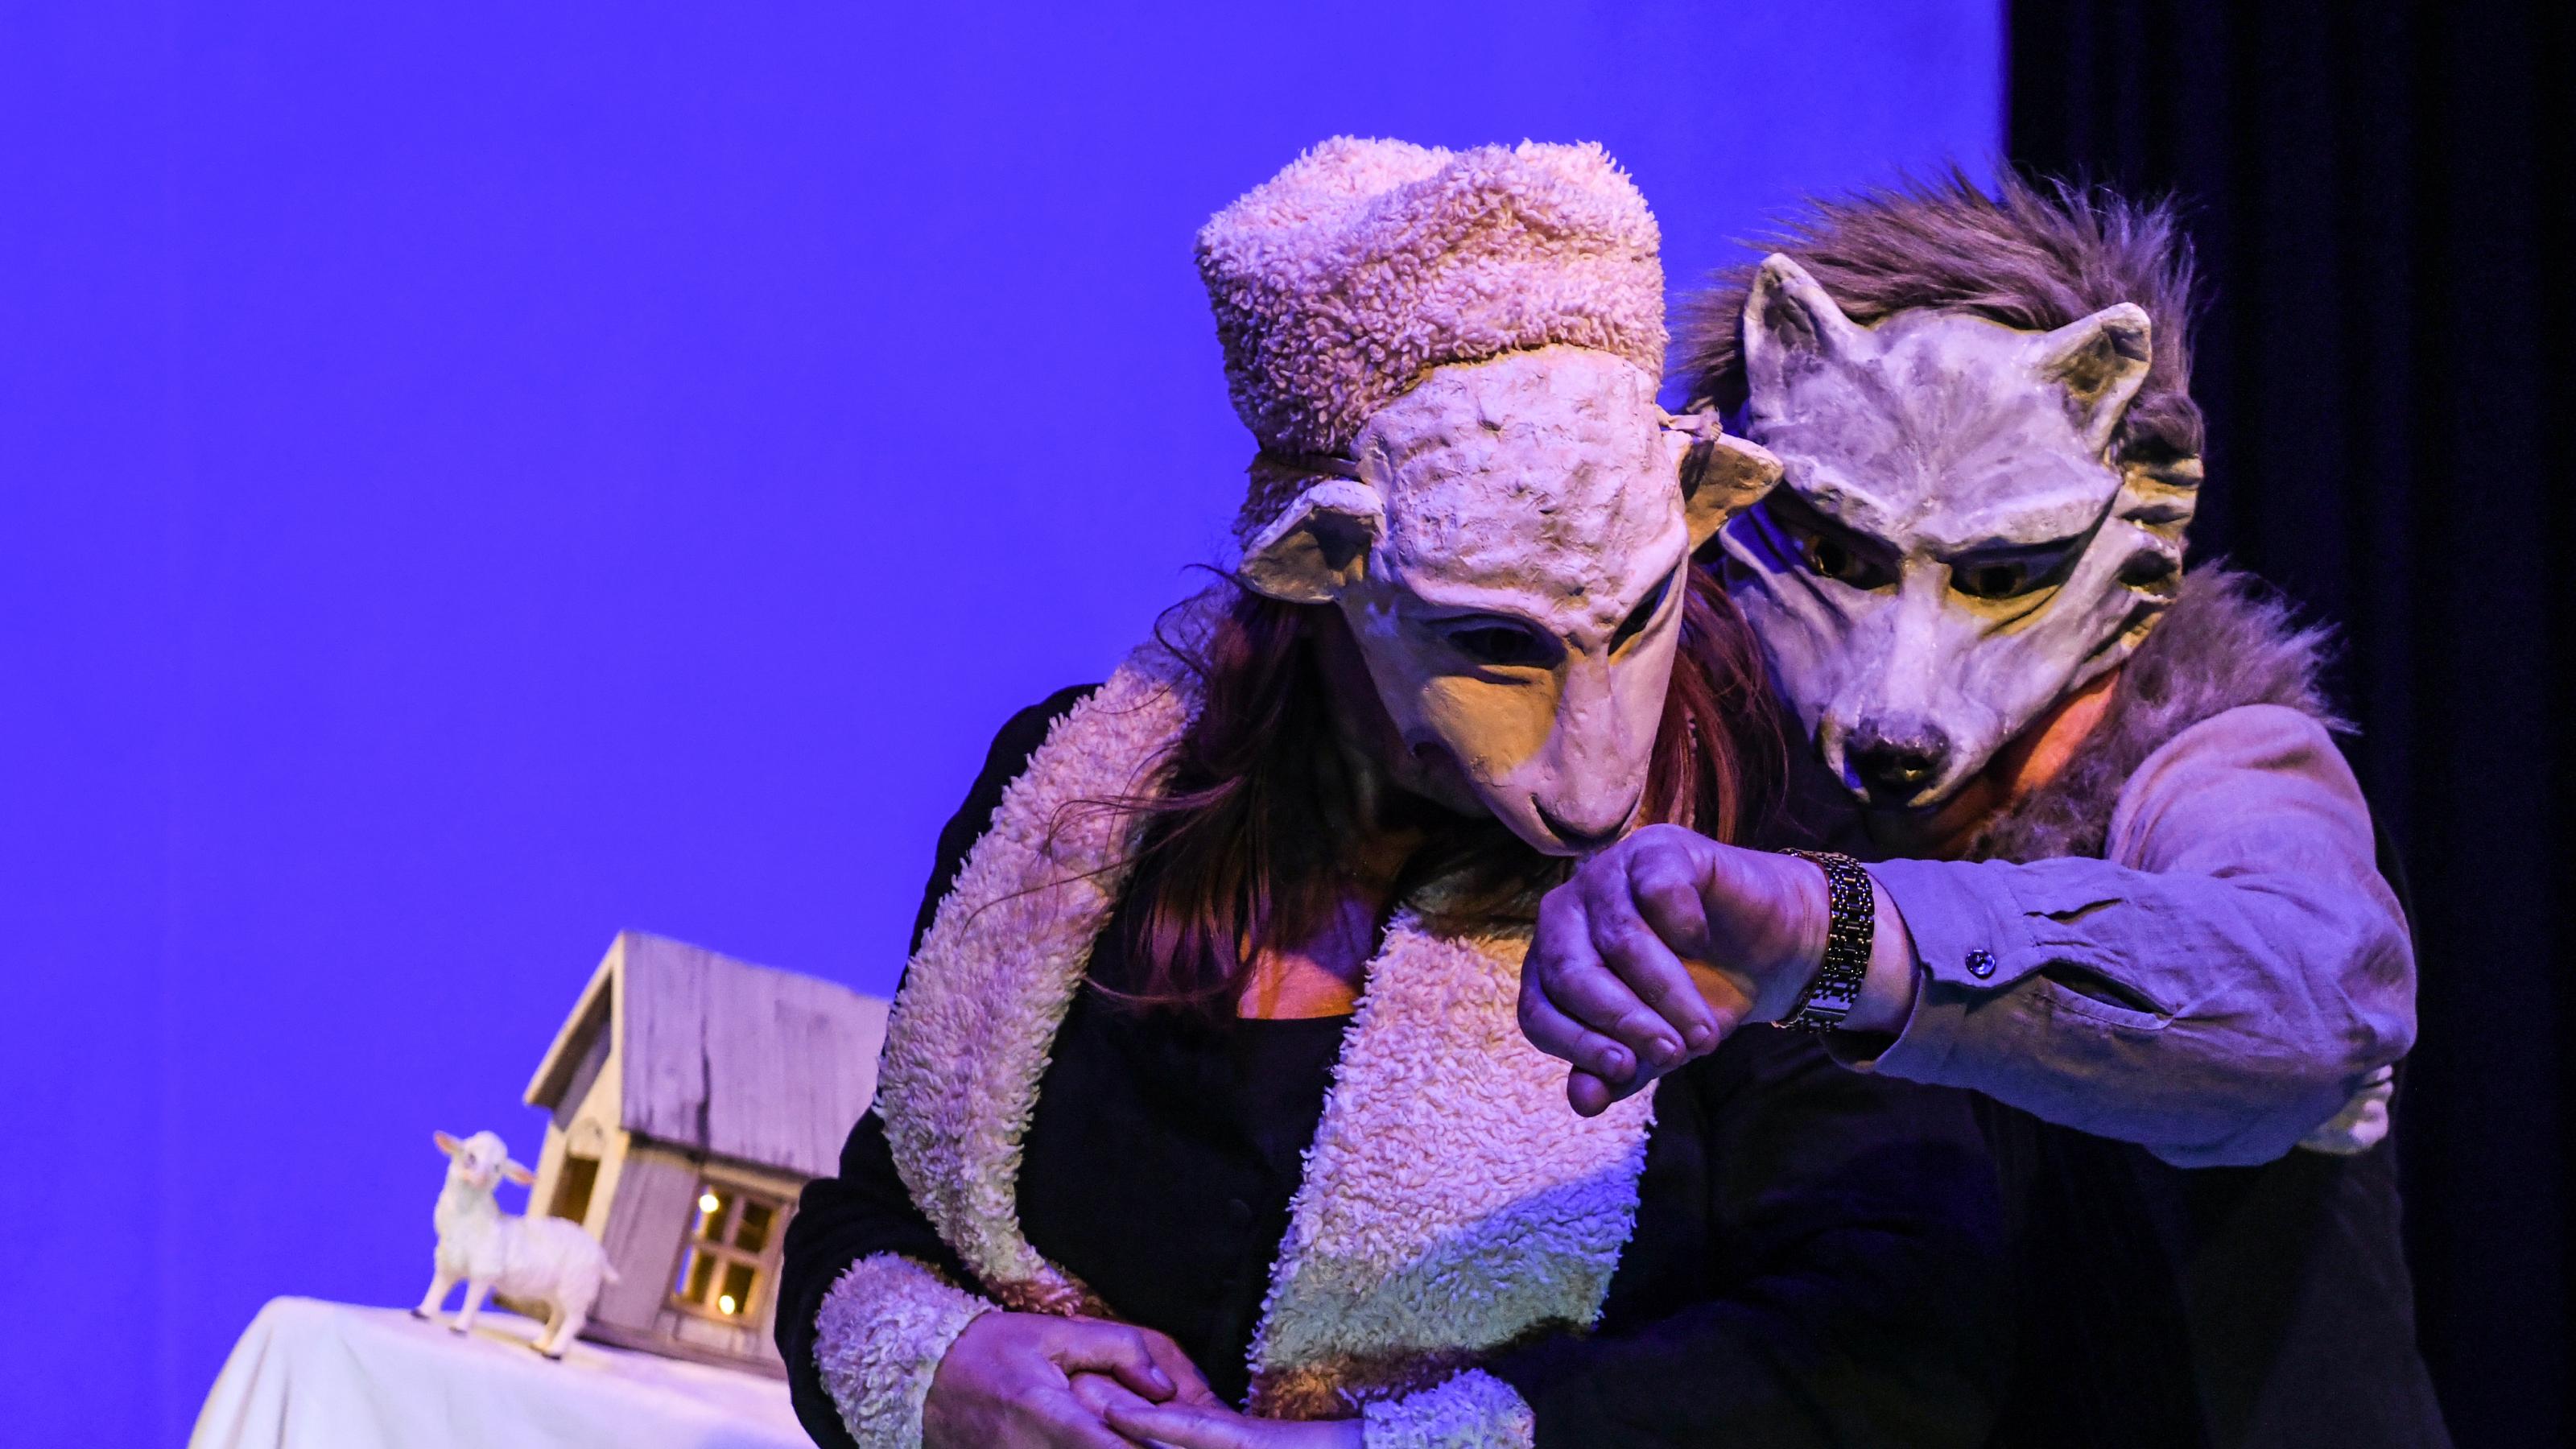 Crischa Ohler und Sjef van der Linden spielen das Schaf und den Wolf. Sie tragen plastische Masken, die die Gesichter halb bedecken. Der Wolf zeigt dem Schaf gerade seine teure Uhr.